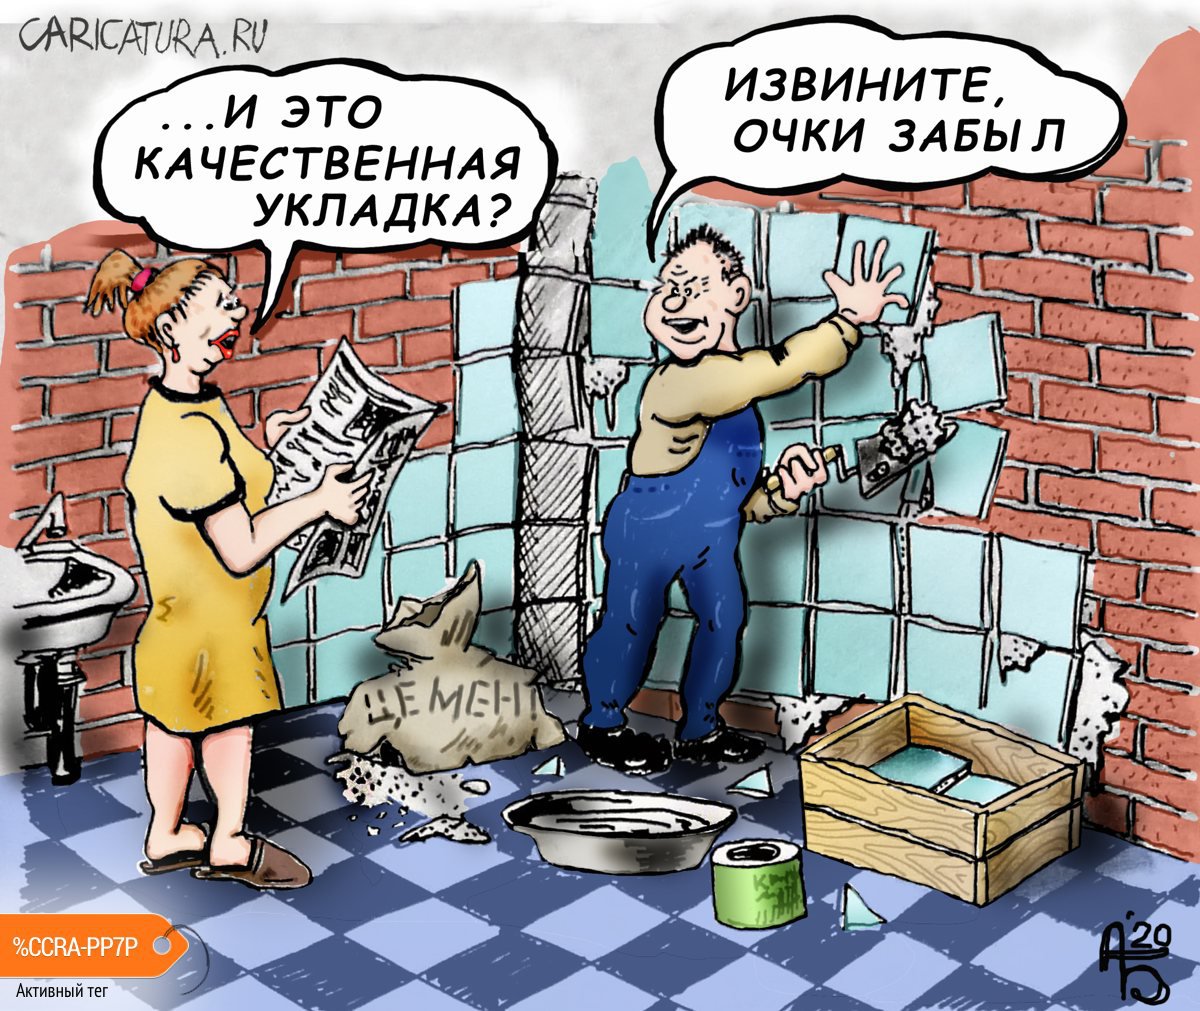 Карикатура "Плиточник", Александр Богданов